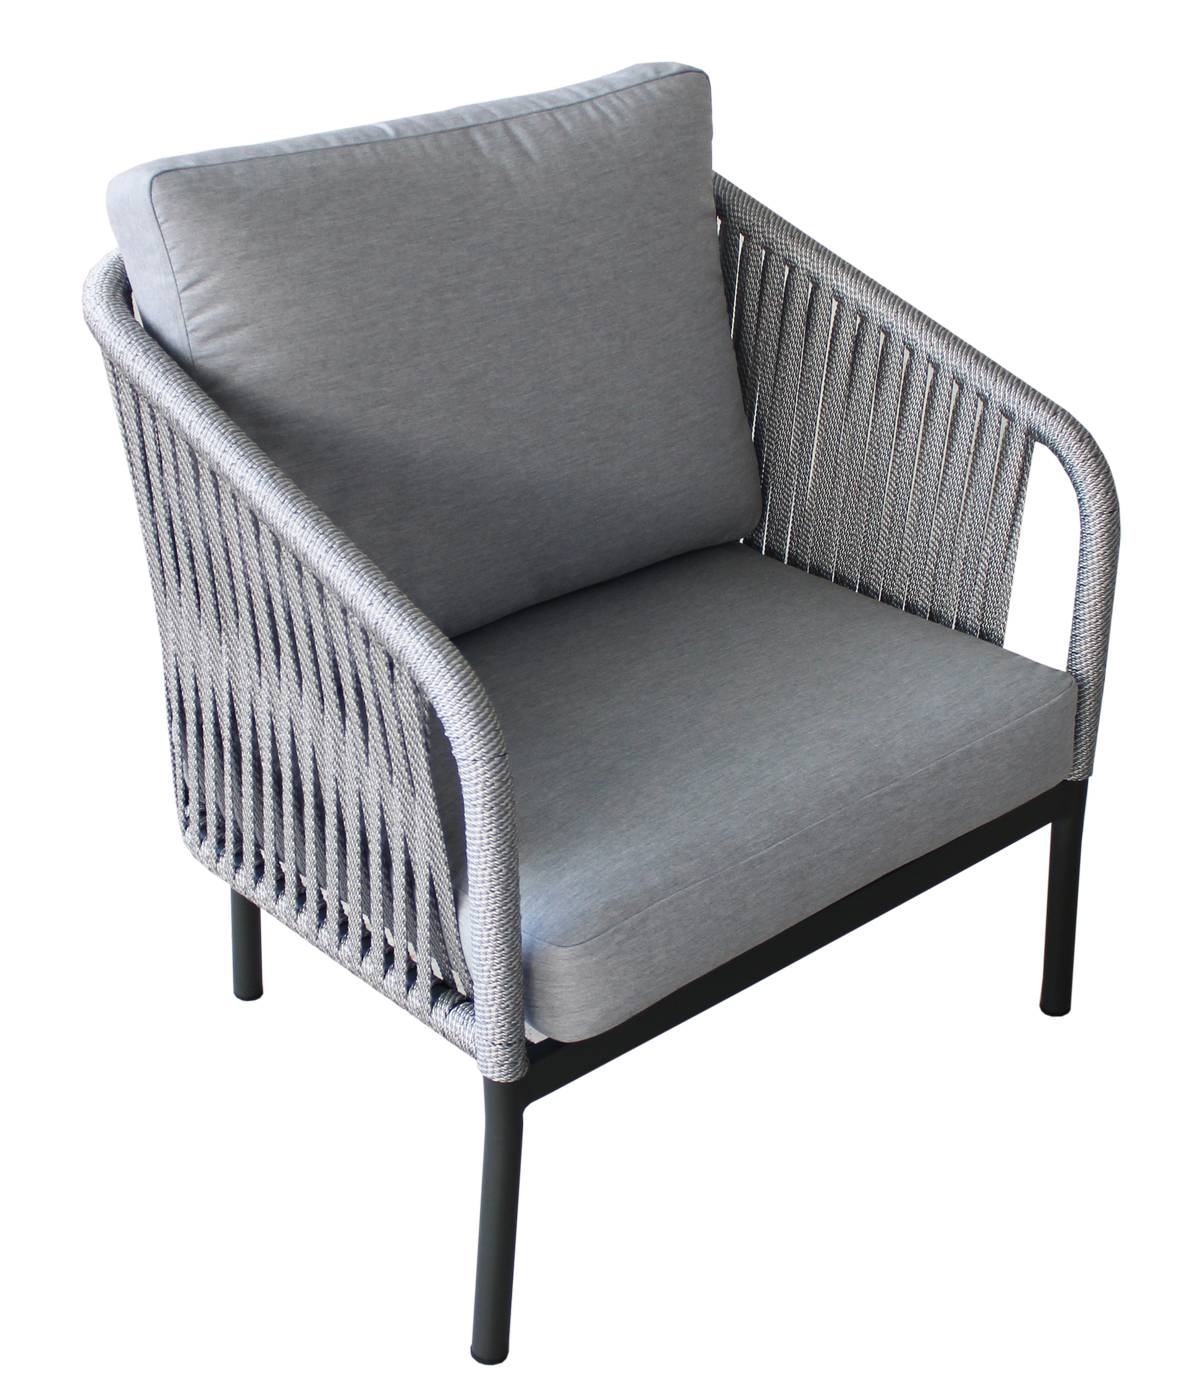 Set Cuerda Yina-10 - Conjunto aluminio color antracita y cuerda color gris: 1 sofá de 3 plazas + 2 sillones + 1 mesa de centro + 2 taburetes.